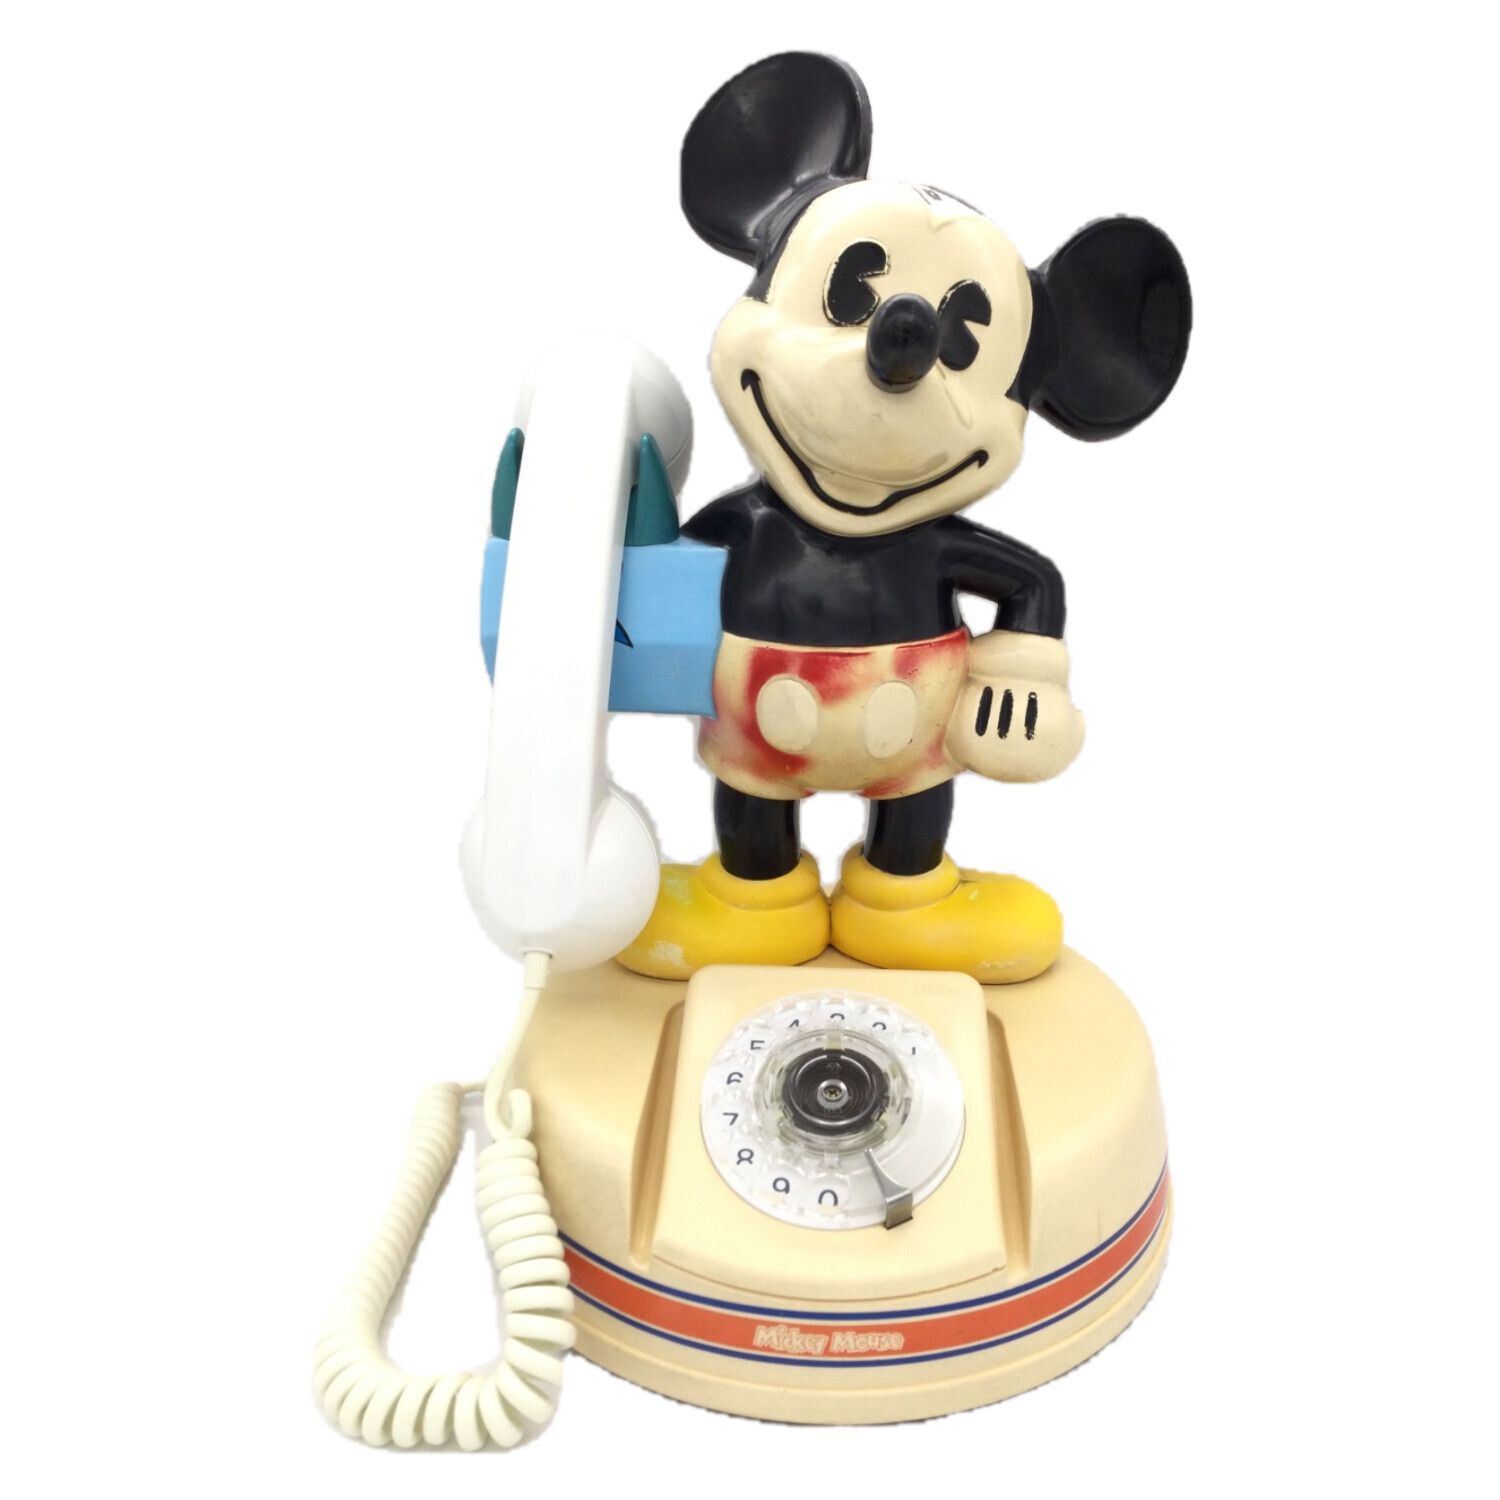 神田通信工業 ディズニー ミッキーマウス ダイヤル式電話 DK-641 